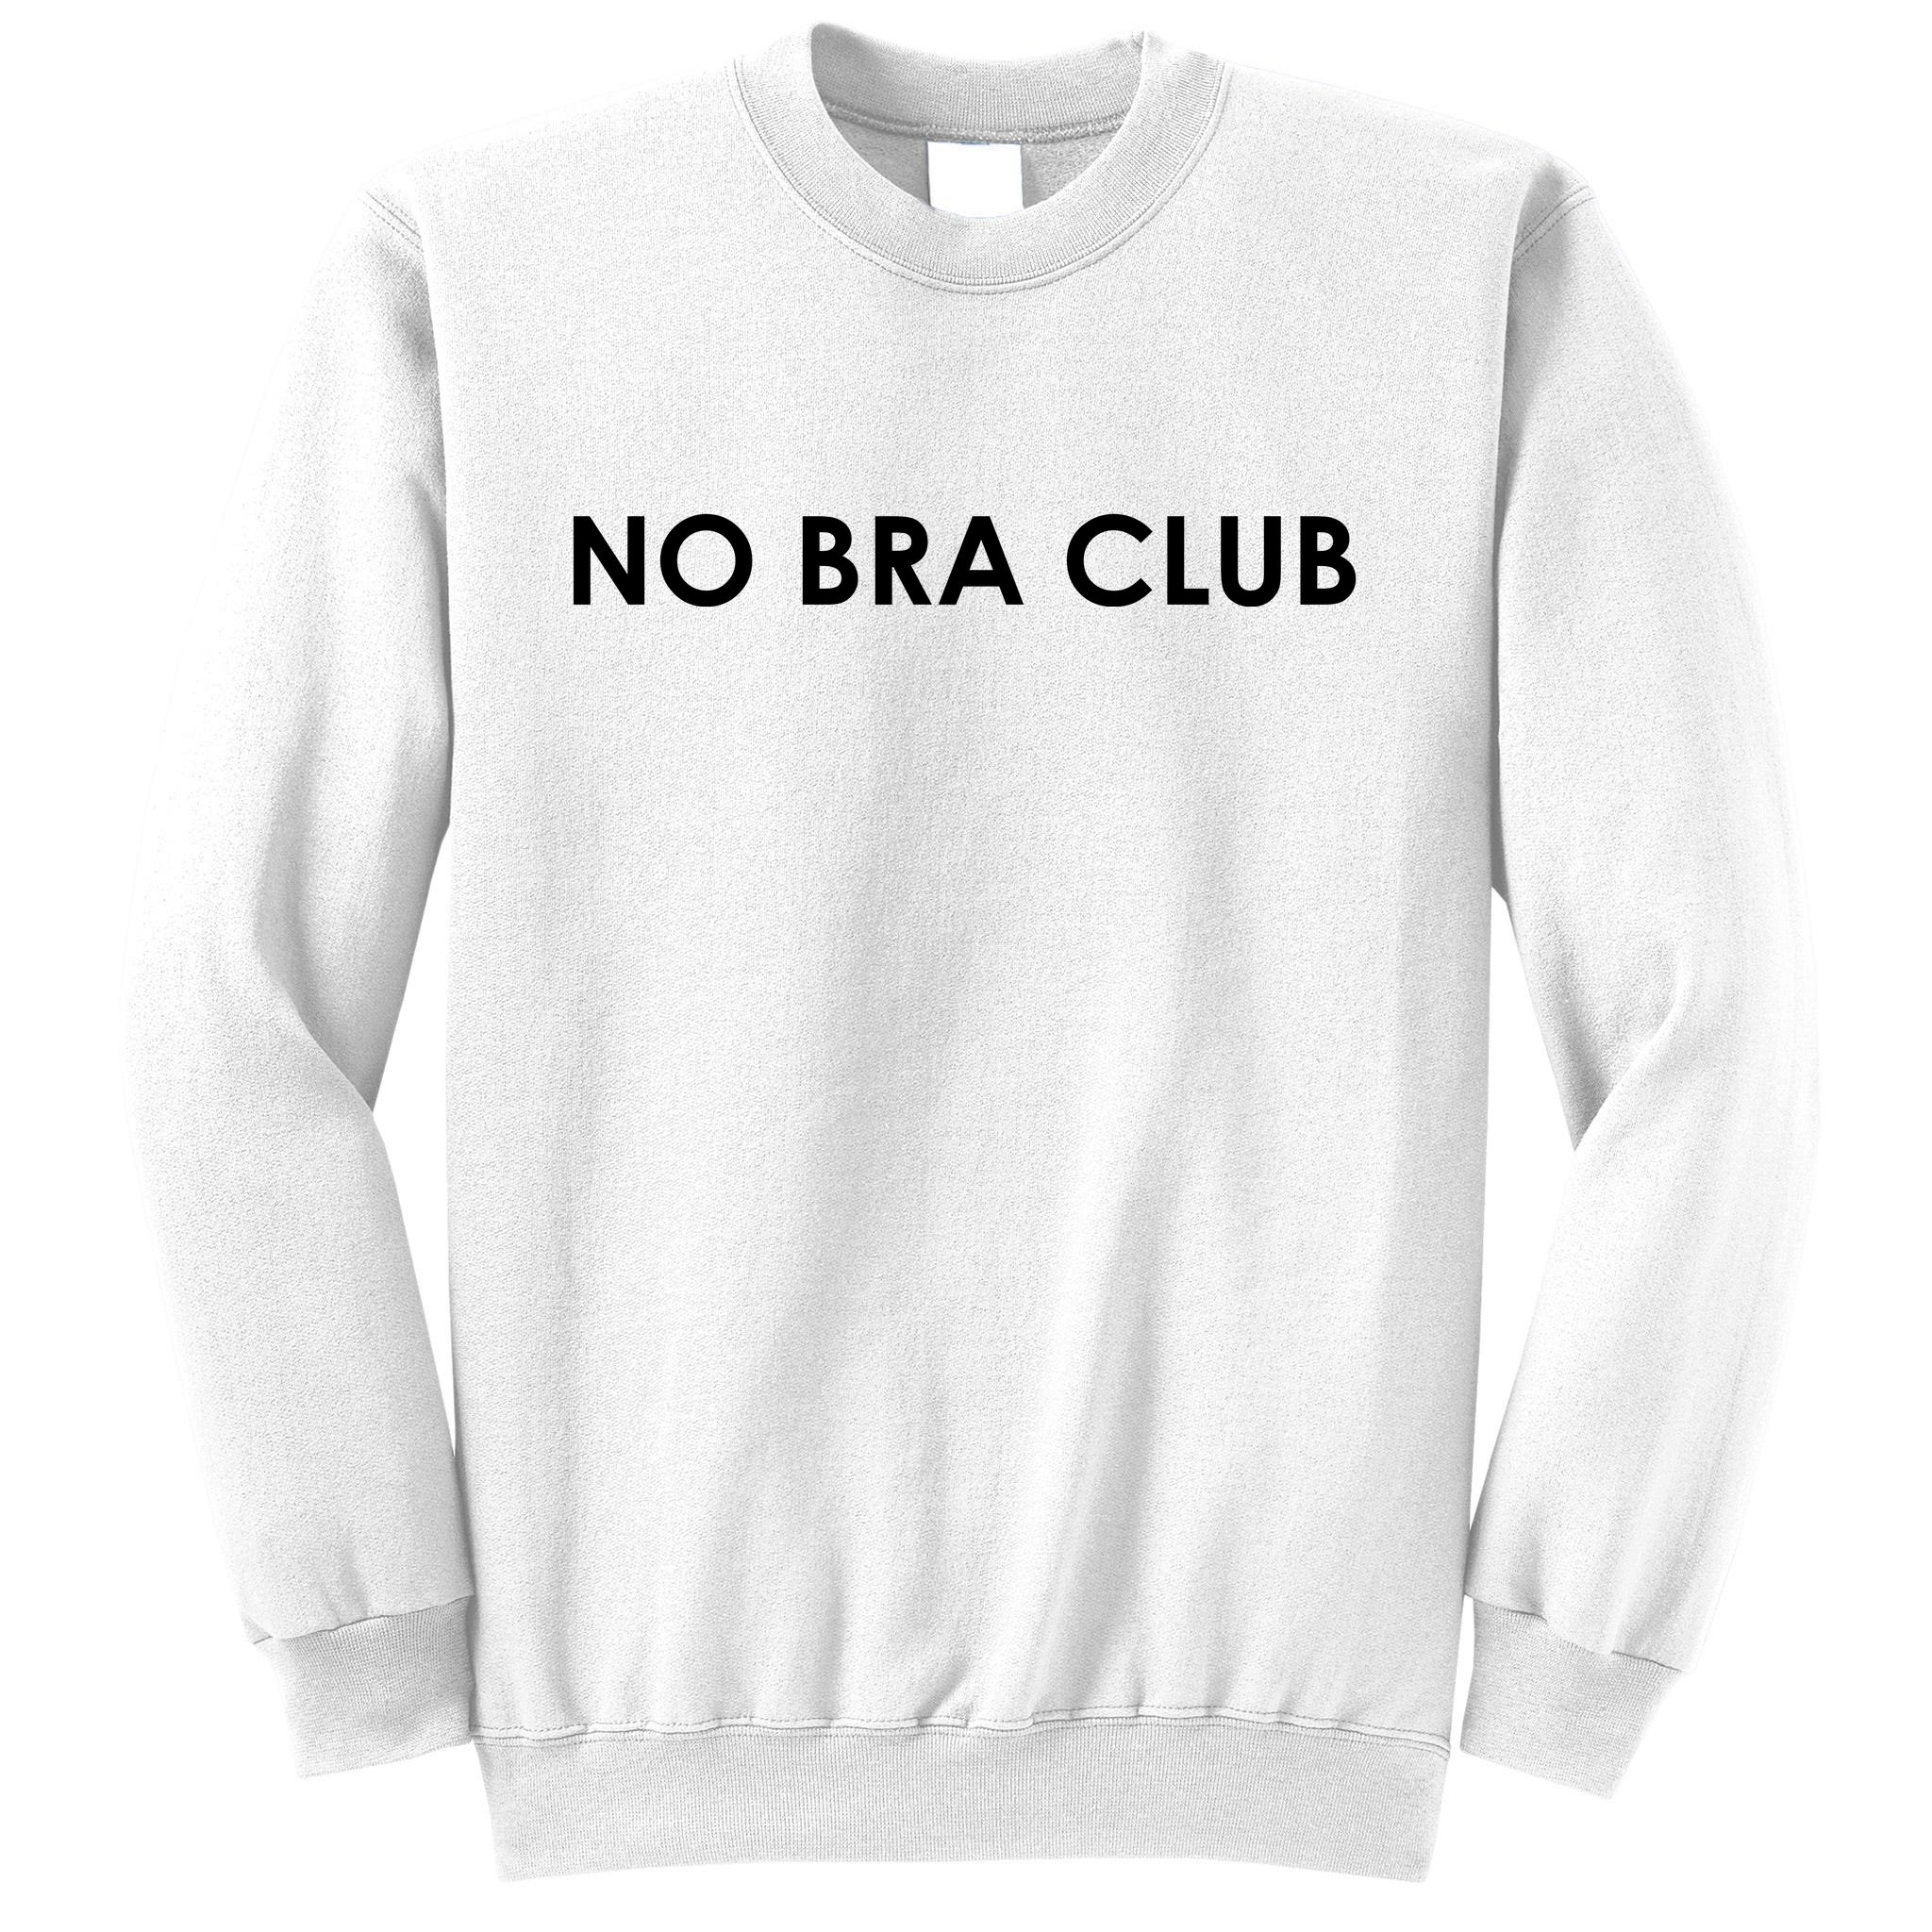 No Bra Club Unisex T-Shirt - Sandilake Clothing